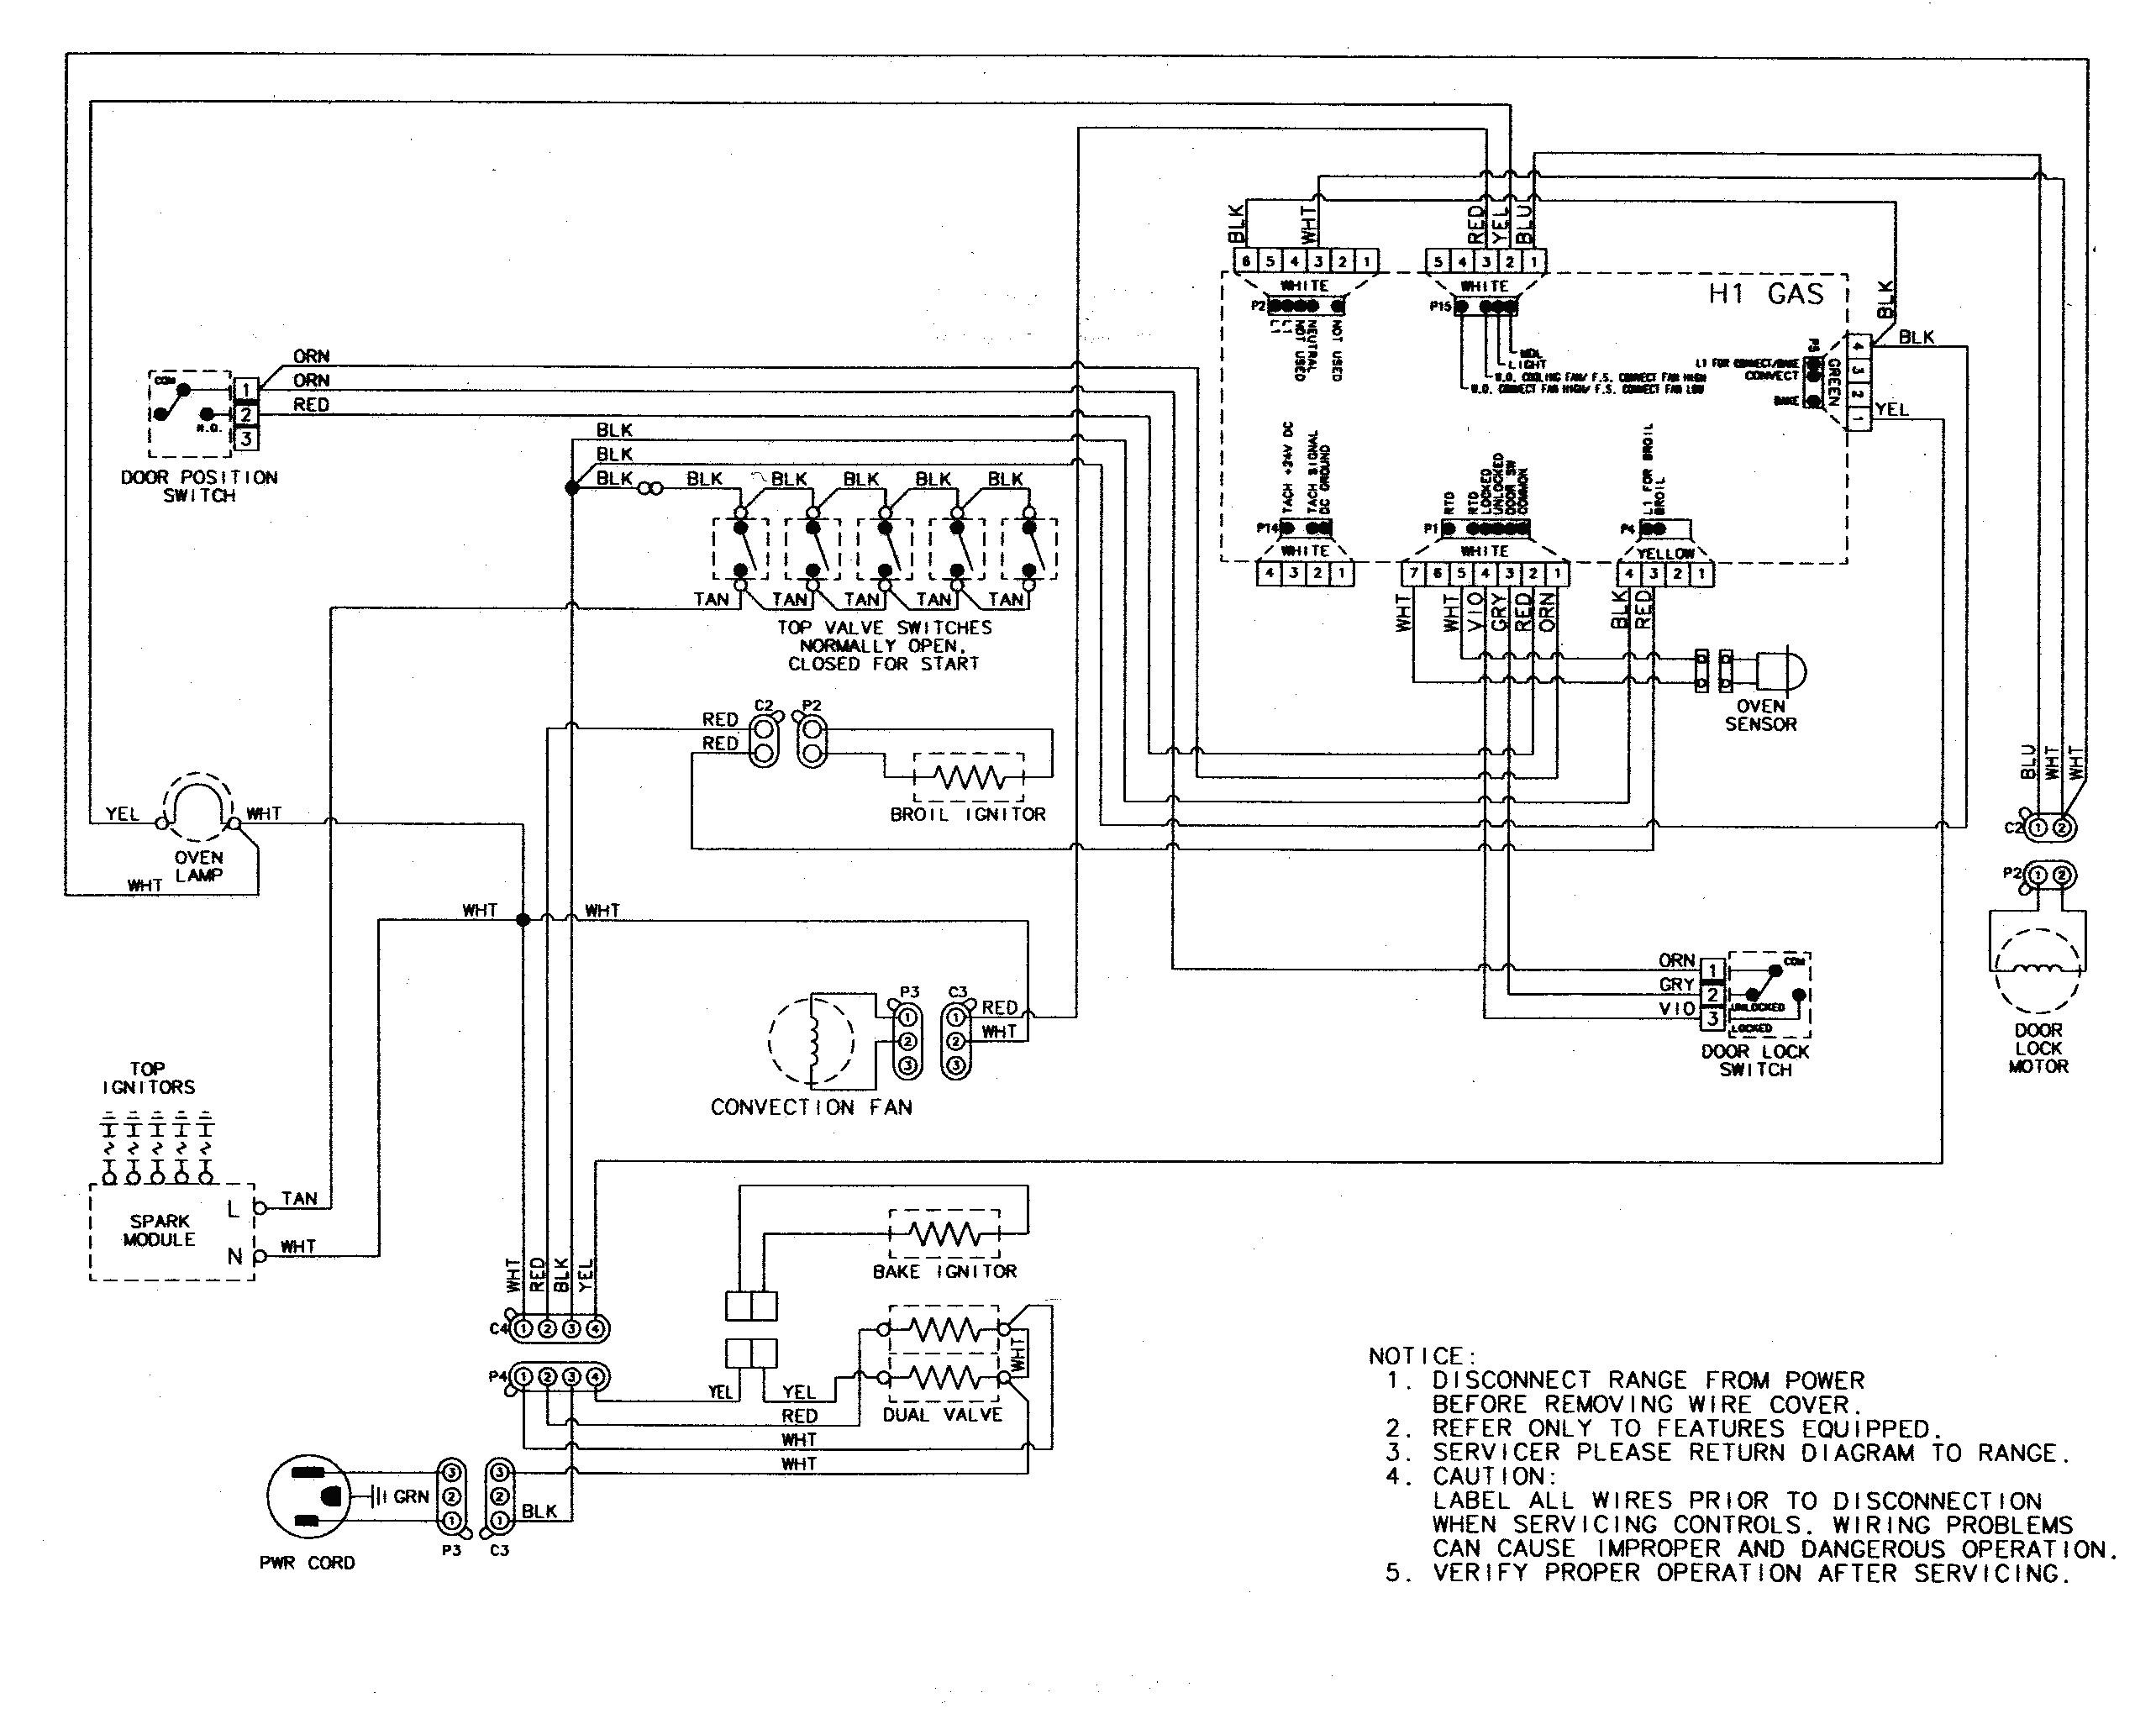 Pac Sni 35 Wiring Diagram | Wiring Diagram - Pac Sni 35 Wiring Diagram